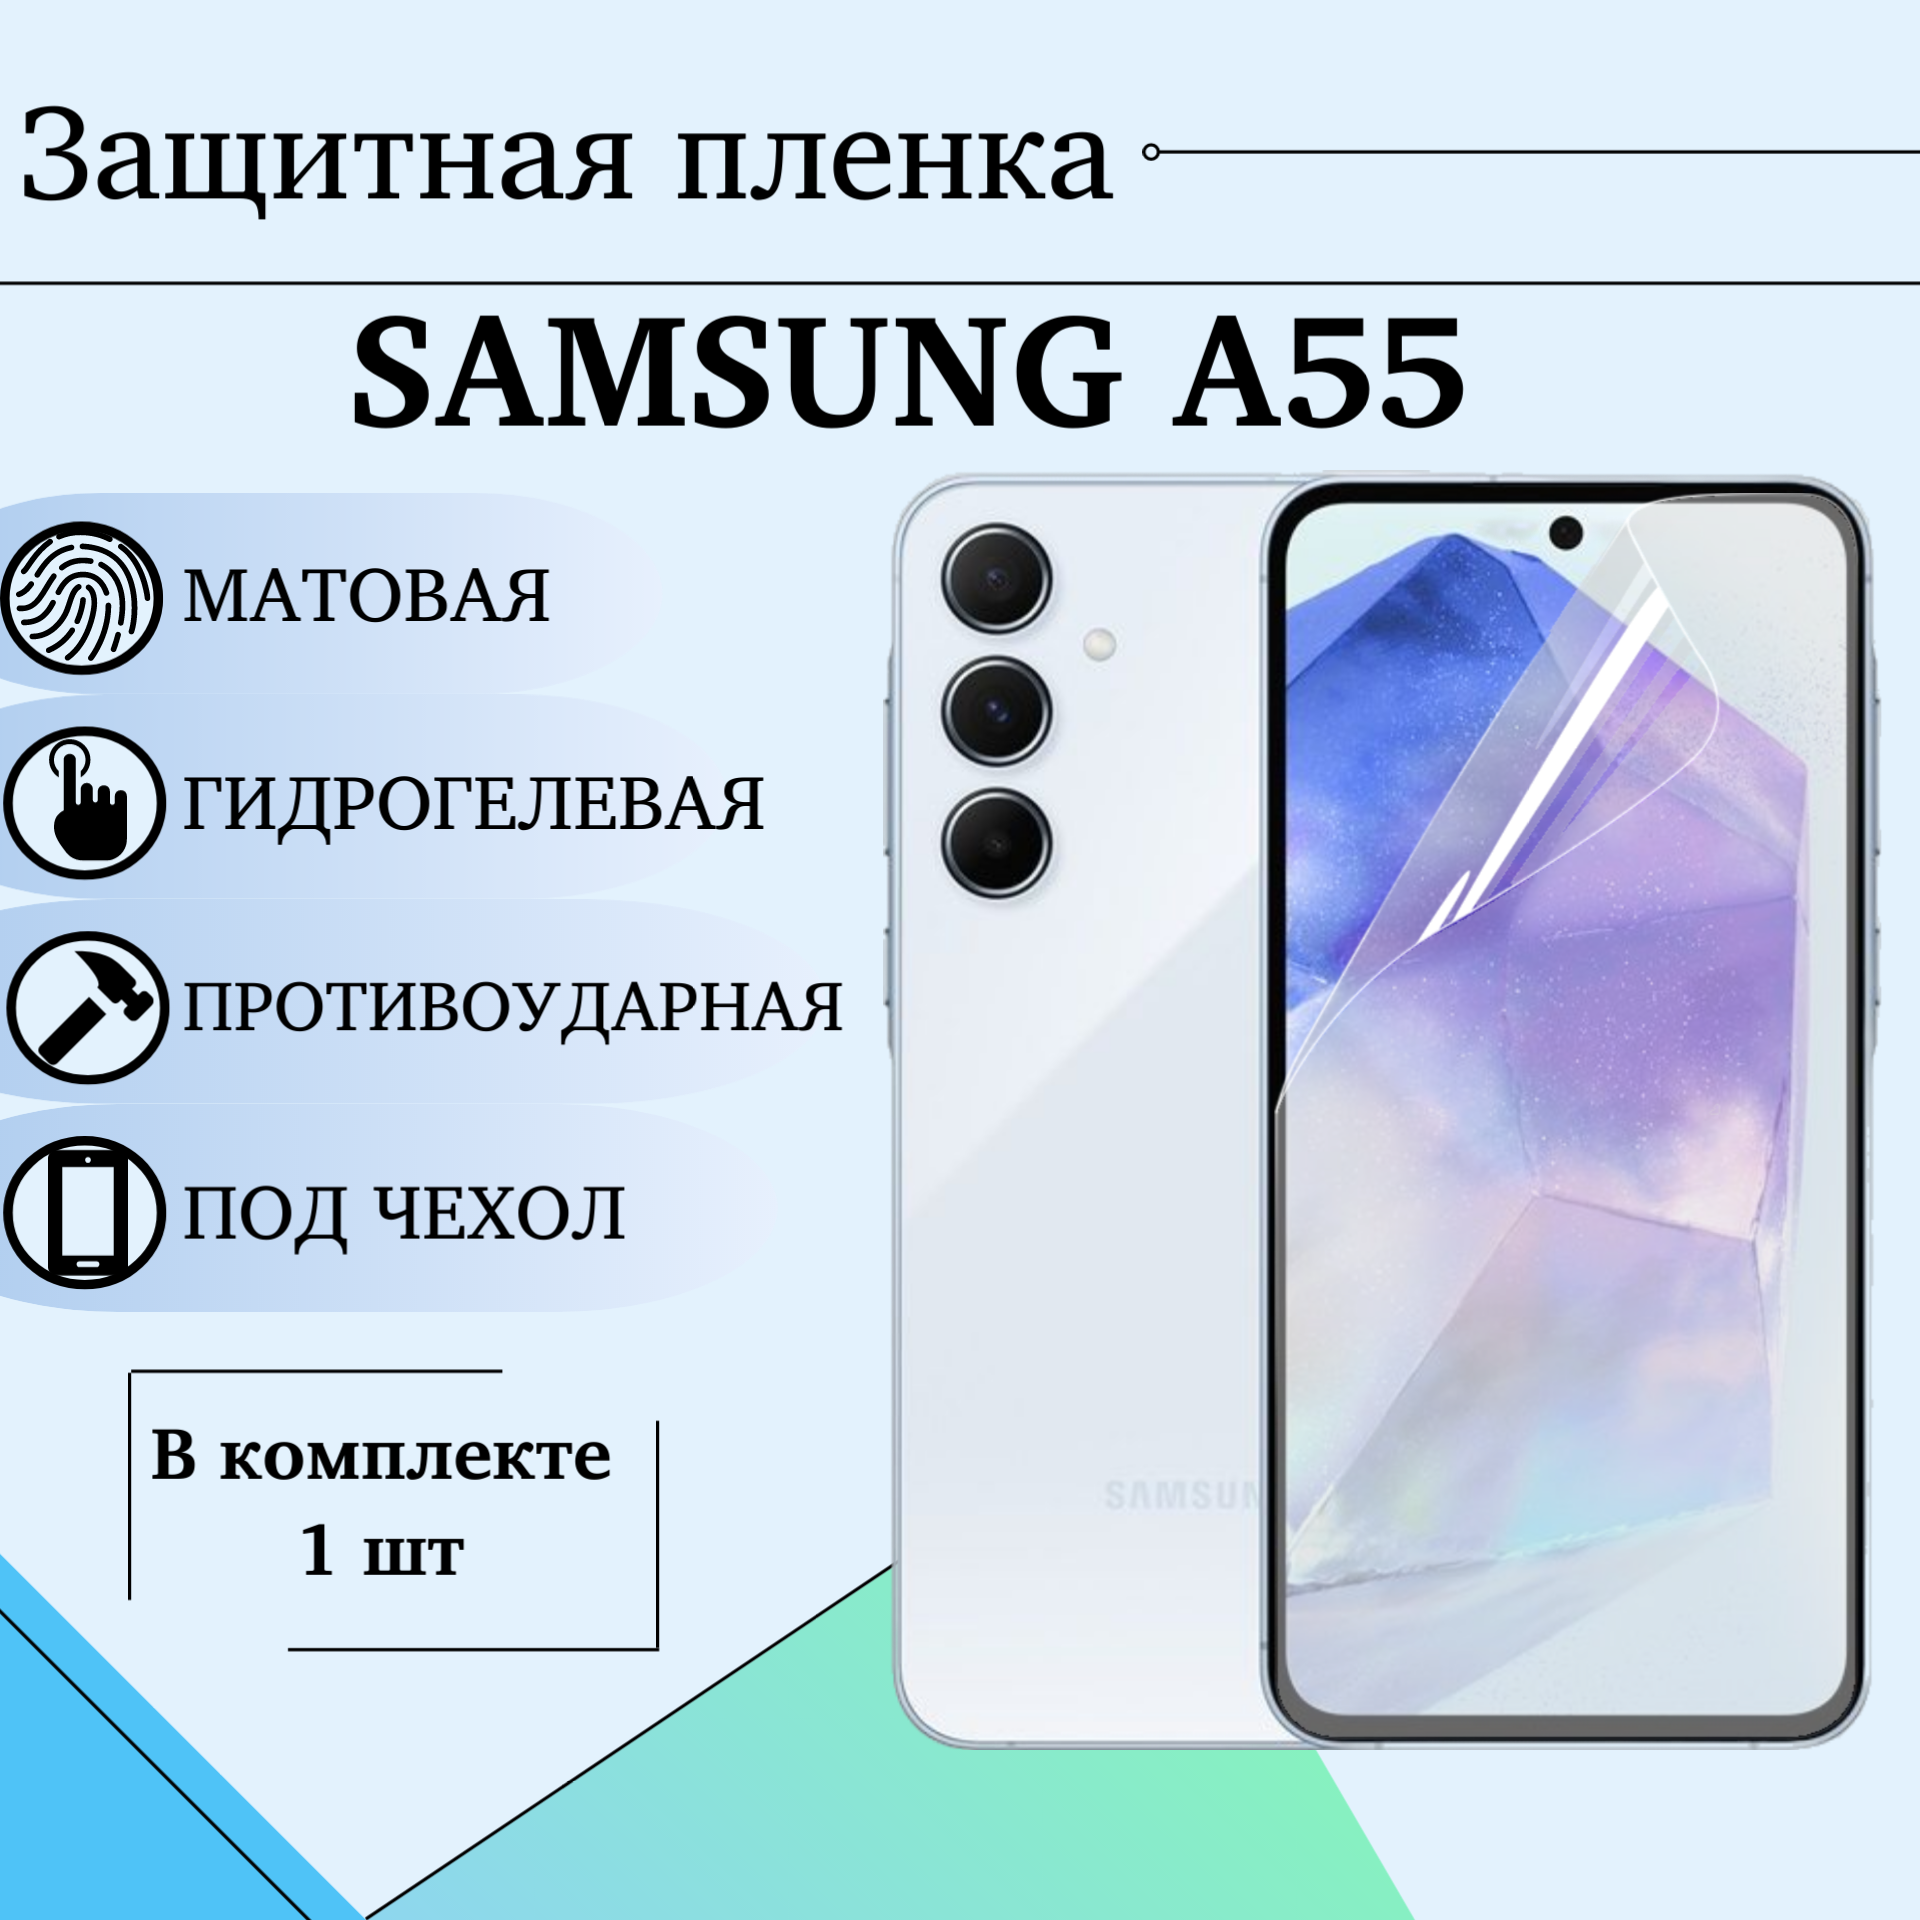 Защитная гидрогелевая пленка матовая для Samsung A55 под чехол 1шт